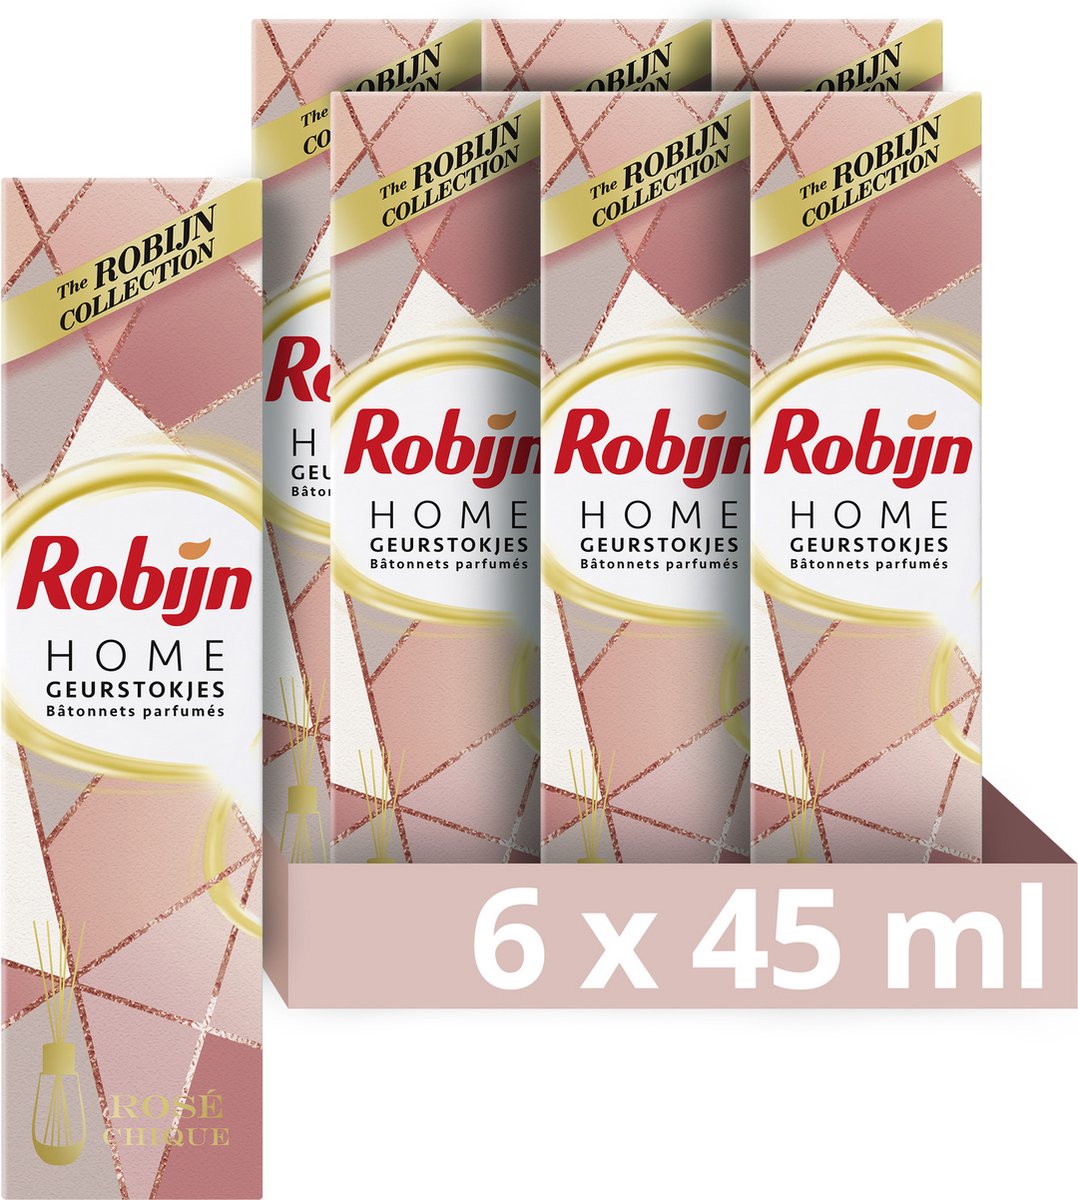 Robijn Home Rosé Chique Geurstokjes - 6 x 45 ml - Voordeelverpakking